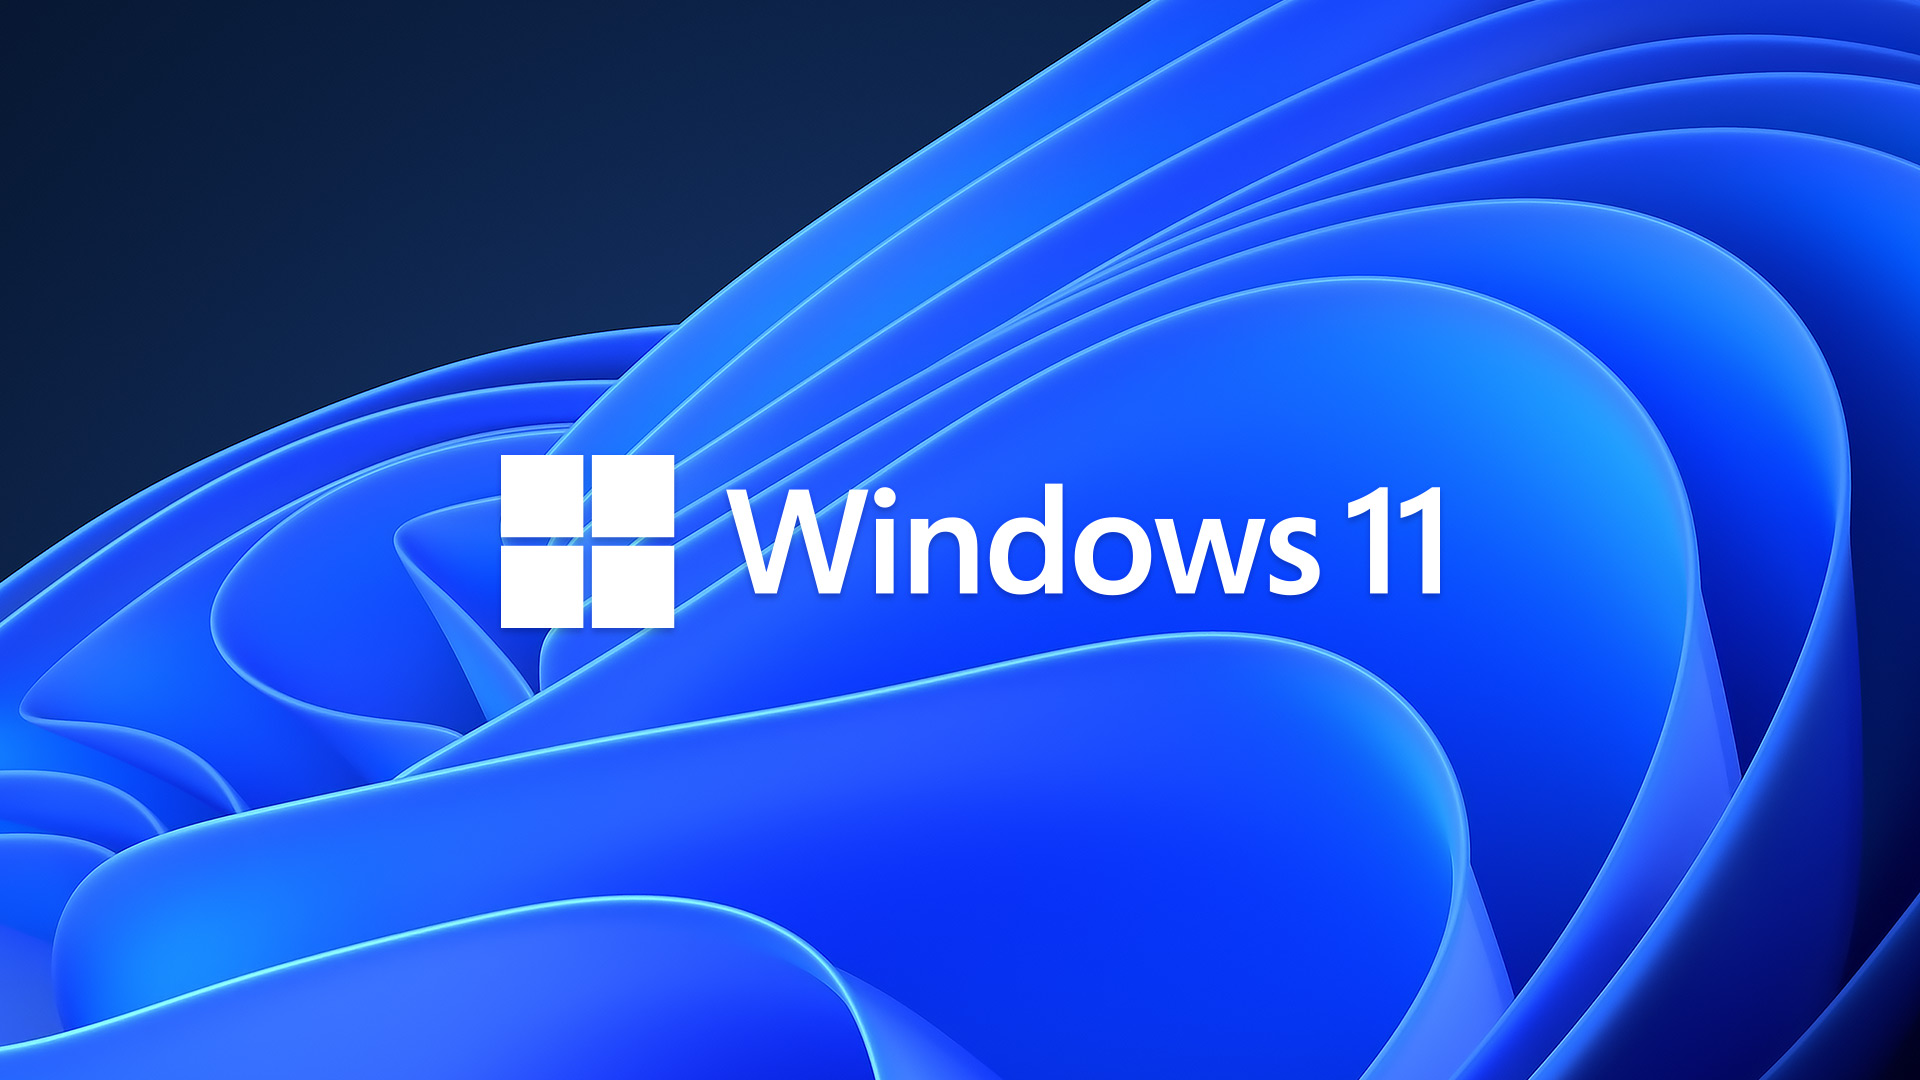 Hướng Dẫn Cách Tăng Cường Bảo Mật Trên Windows 11 -VERA STAR